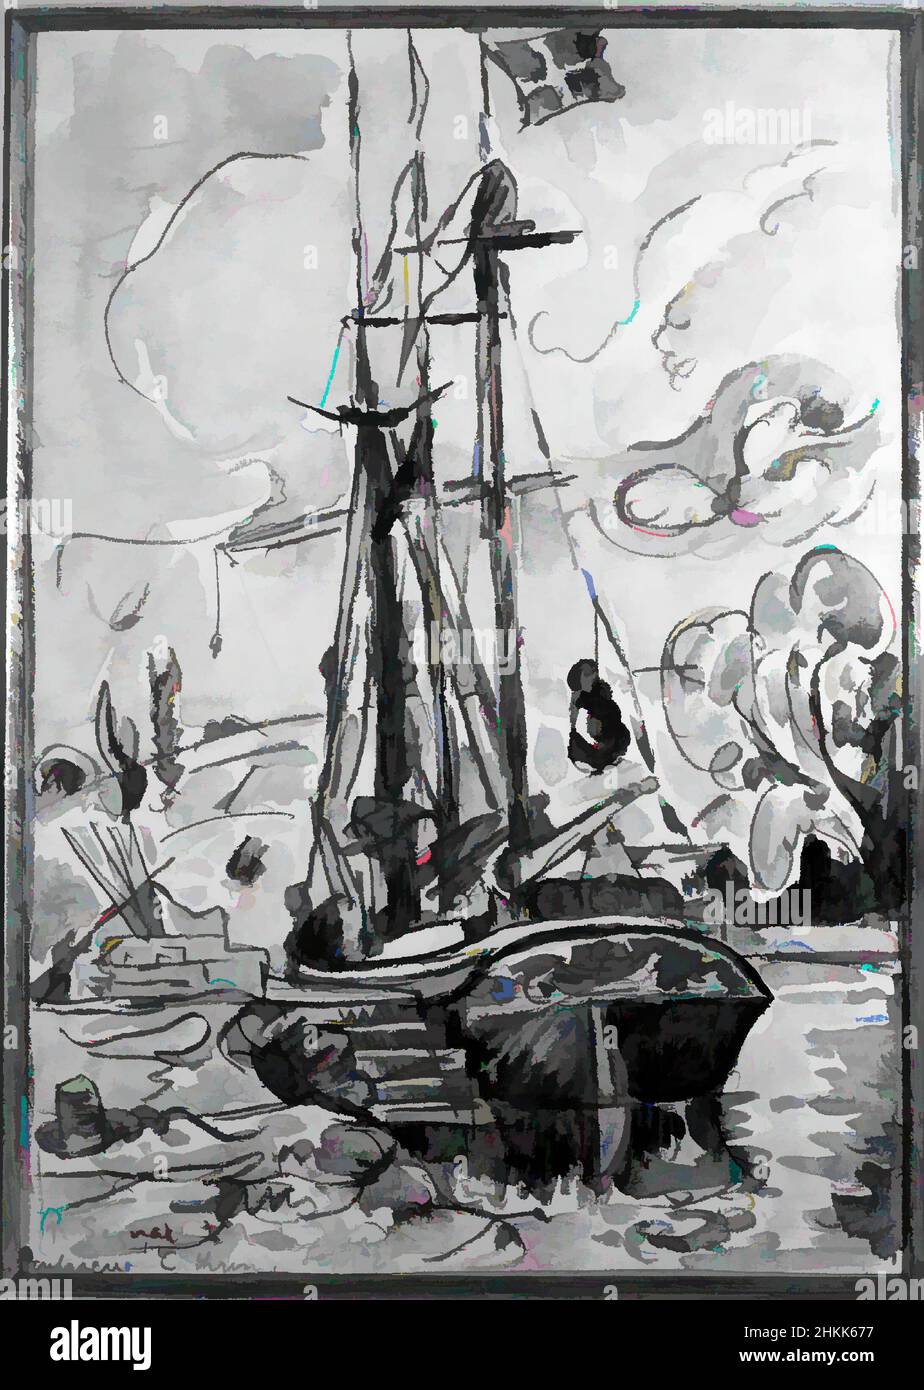 Arte ispirata da barca da pesca ormeggiata, Paul Signac, francese, 1863-1935, Watercolor, 12 x 8 1/2 pollici, opere classiche modernizzate da Artotop con un tuffo di modernità. Forme, colore e valore, impatto visivo accattivante sulle emozioni artistiche attraverso la libertà delle opere d'arte in modo contemporaneo. Un messaggio senza tempo che persegue una nuova direzione selvaggiamente creativa. Artisti che si rivolgono al supporto digitale e creano l'NFT Artotop Foto Stock